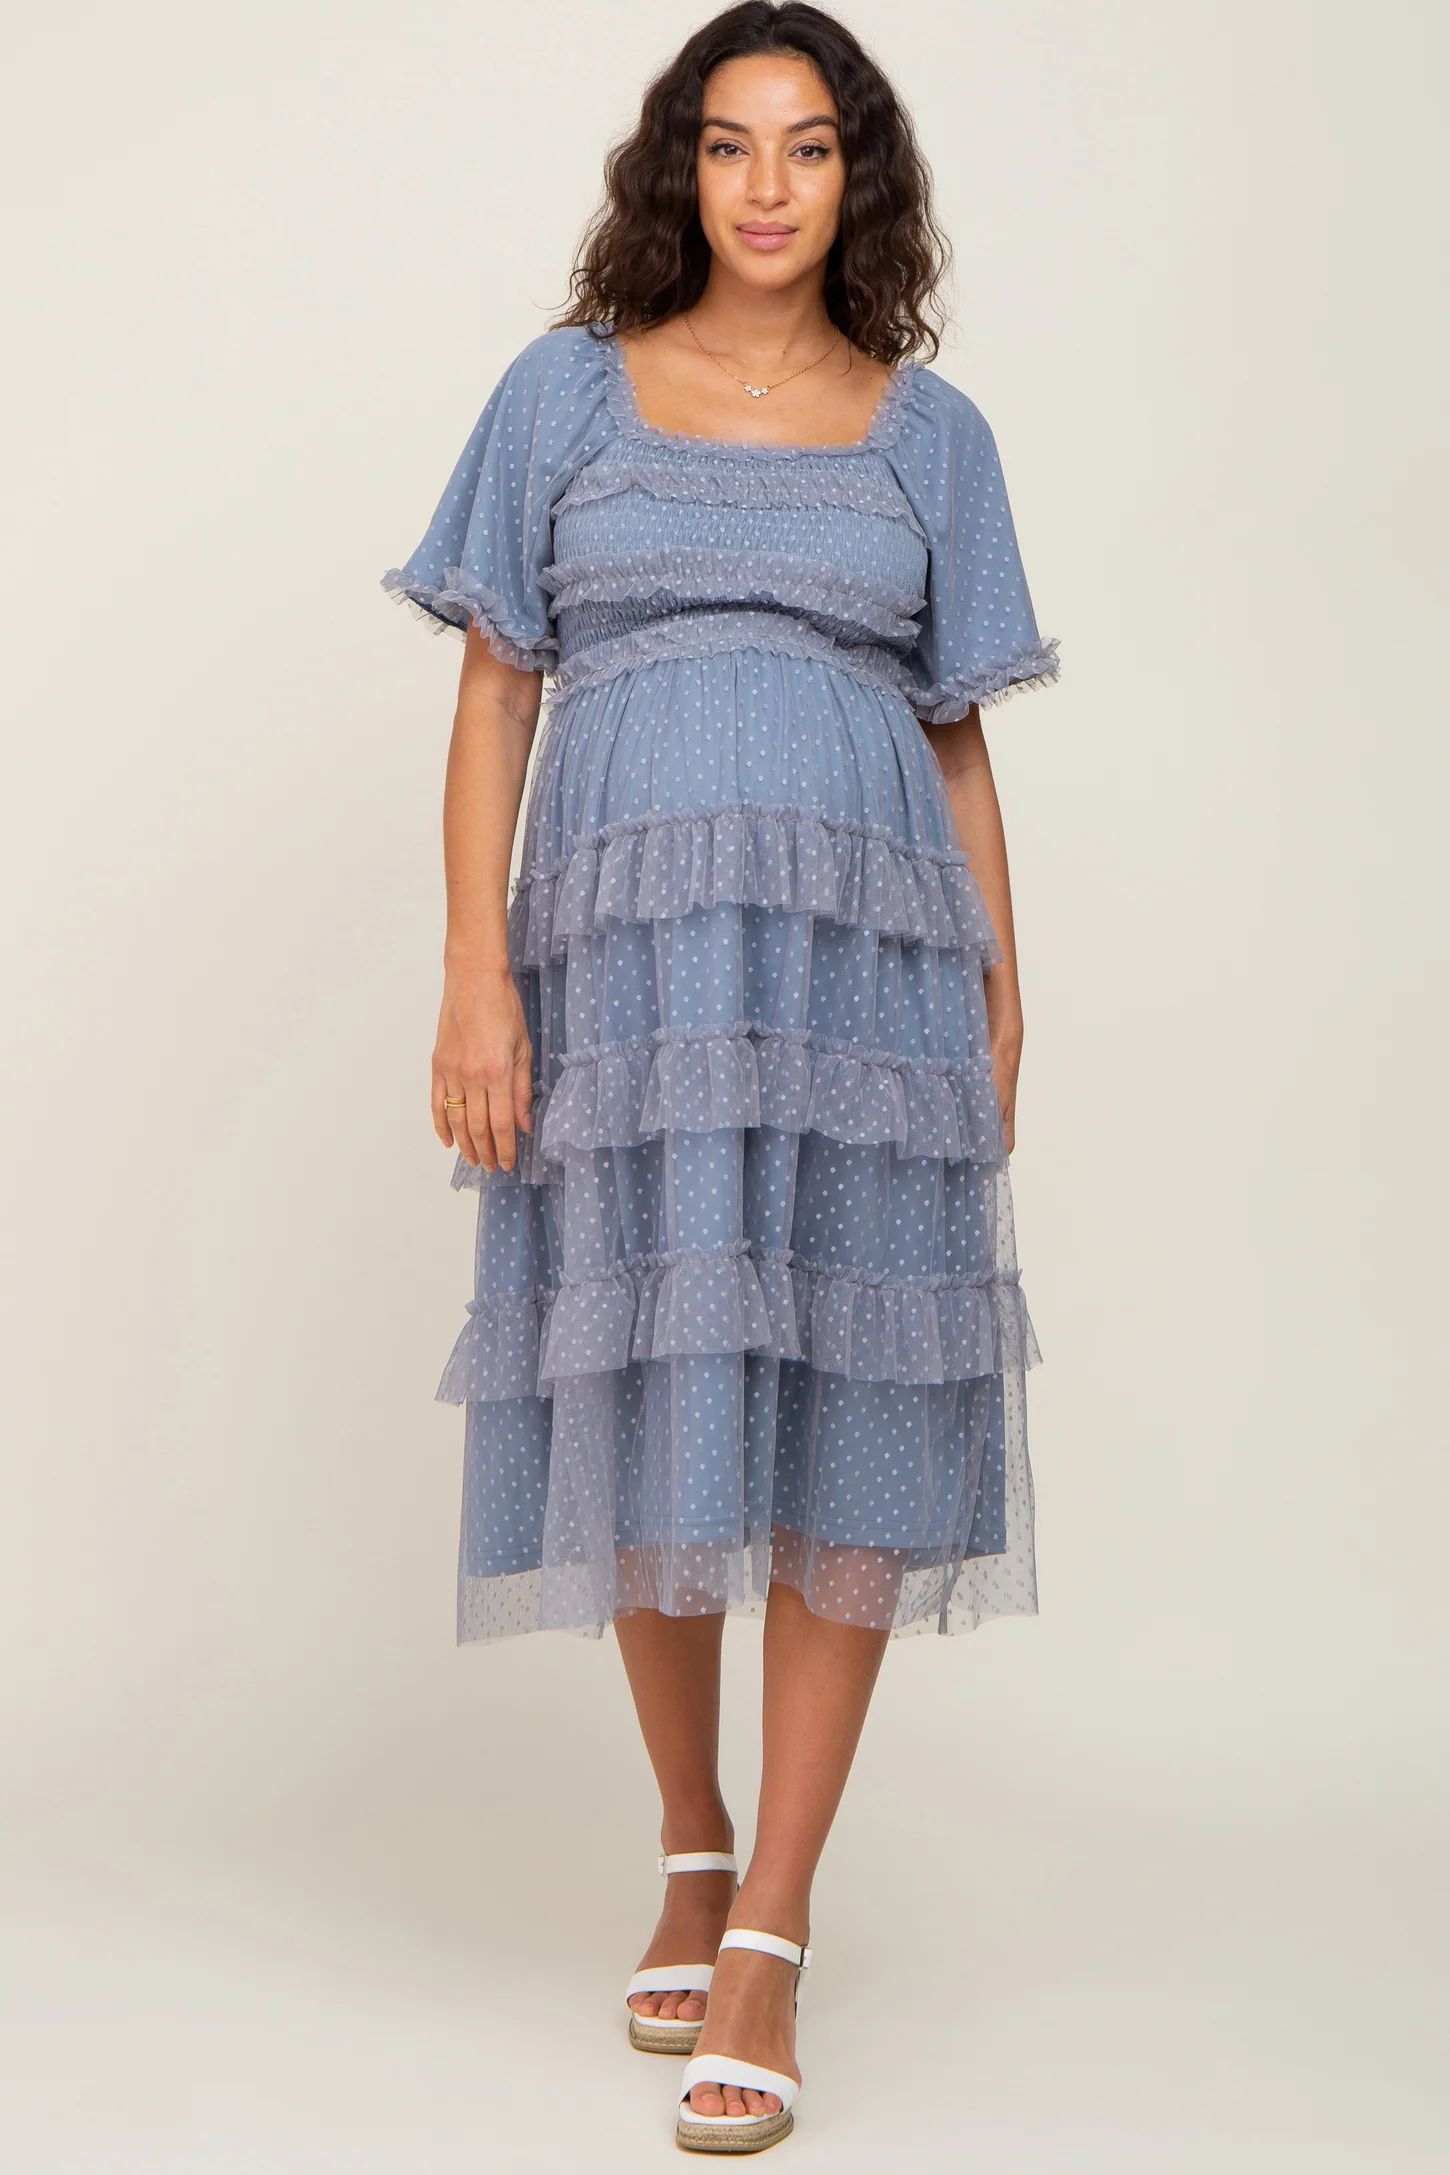 Blue Dot Smocked Ruffle Tiered Maternity Midi Dress | PinkBlush Maternity